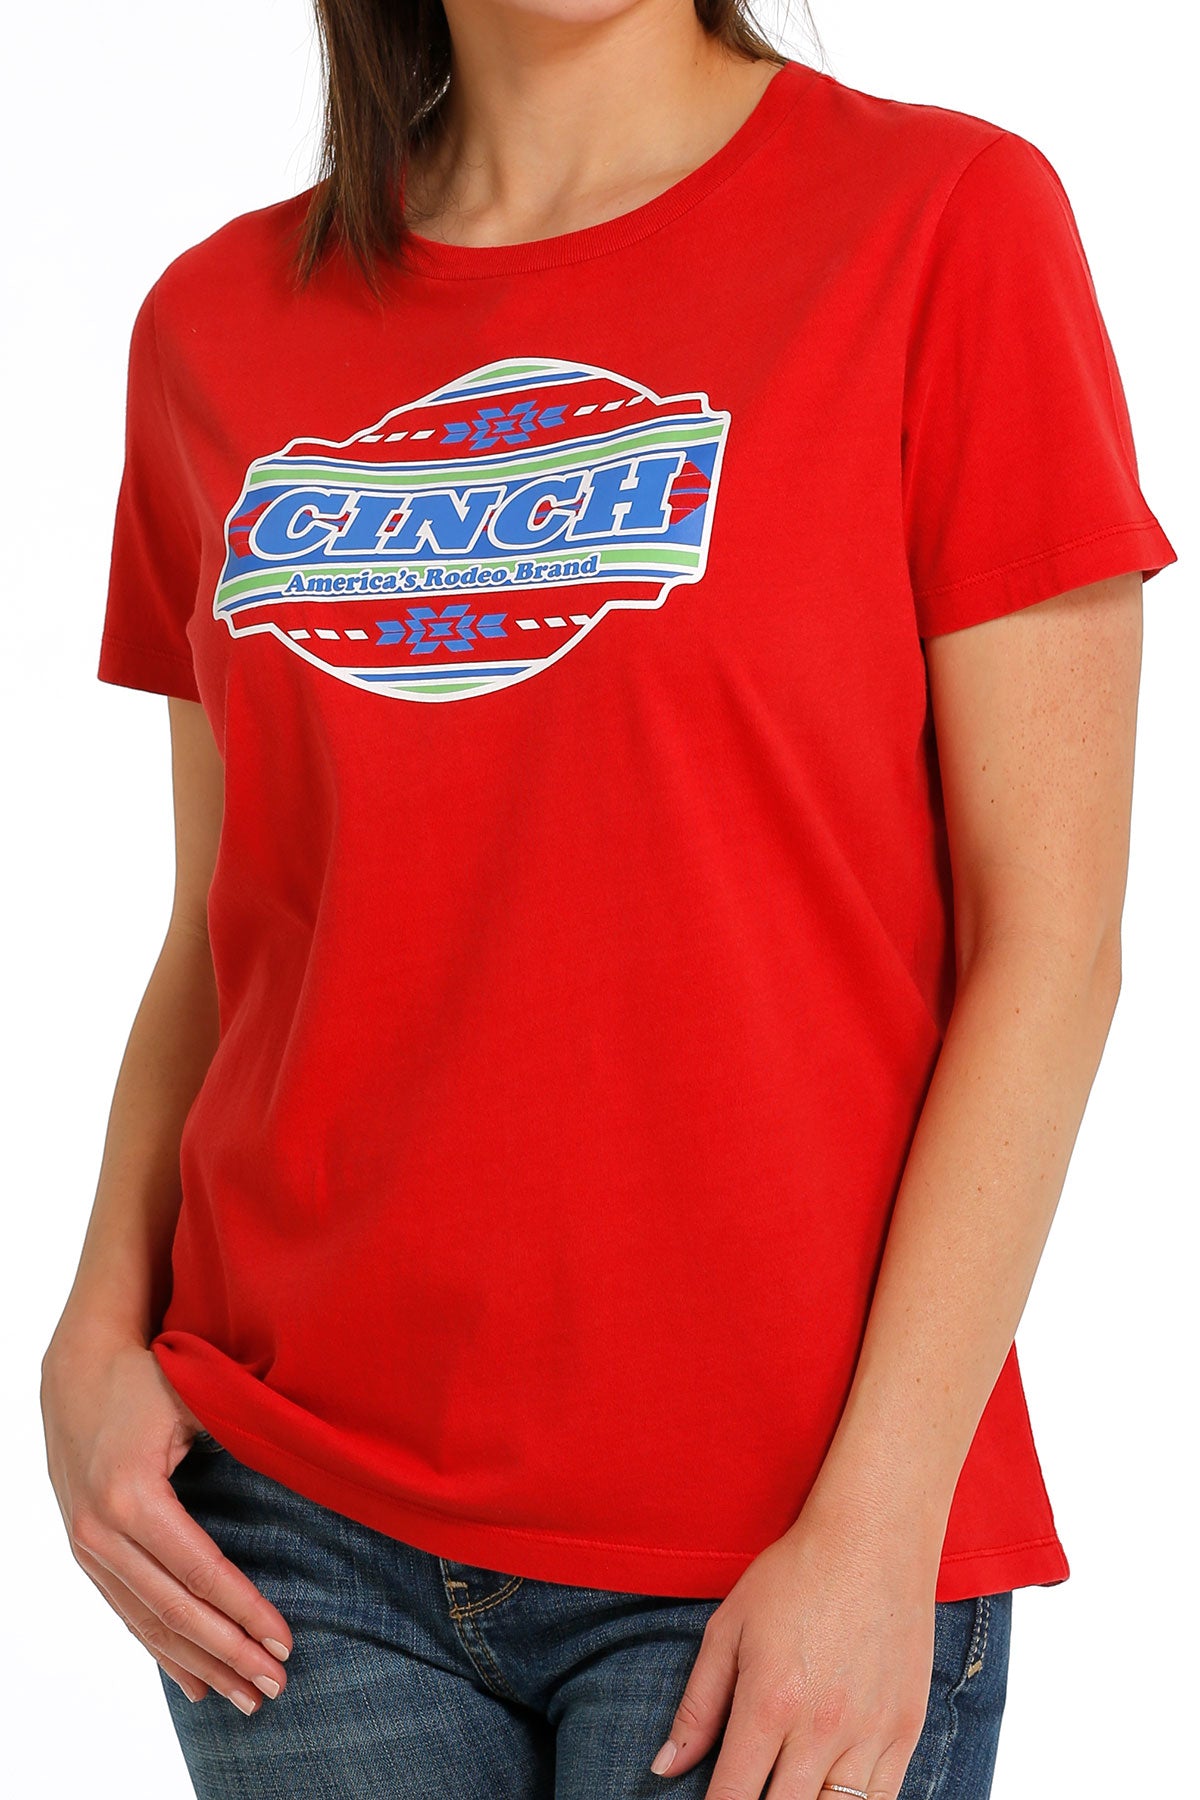 Cinch Women's Short Sleeve Shirt STYLE MSK7901004